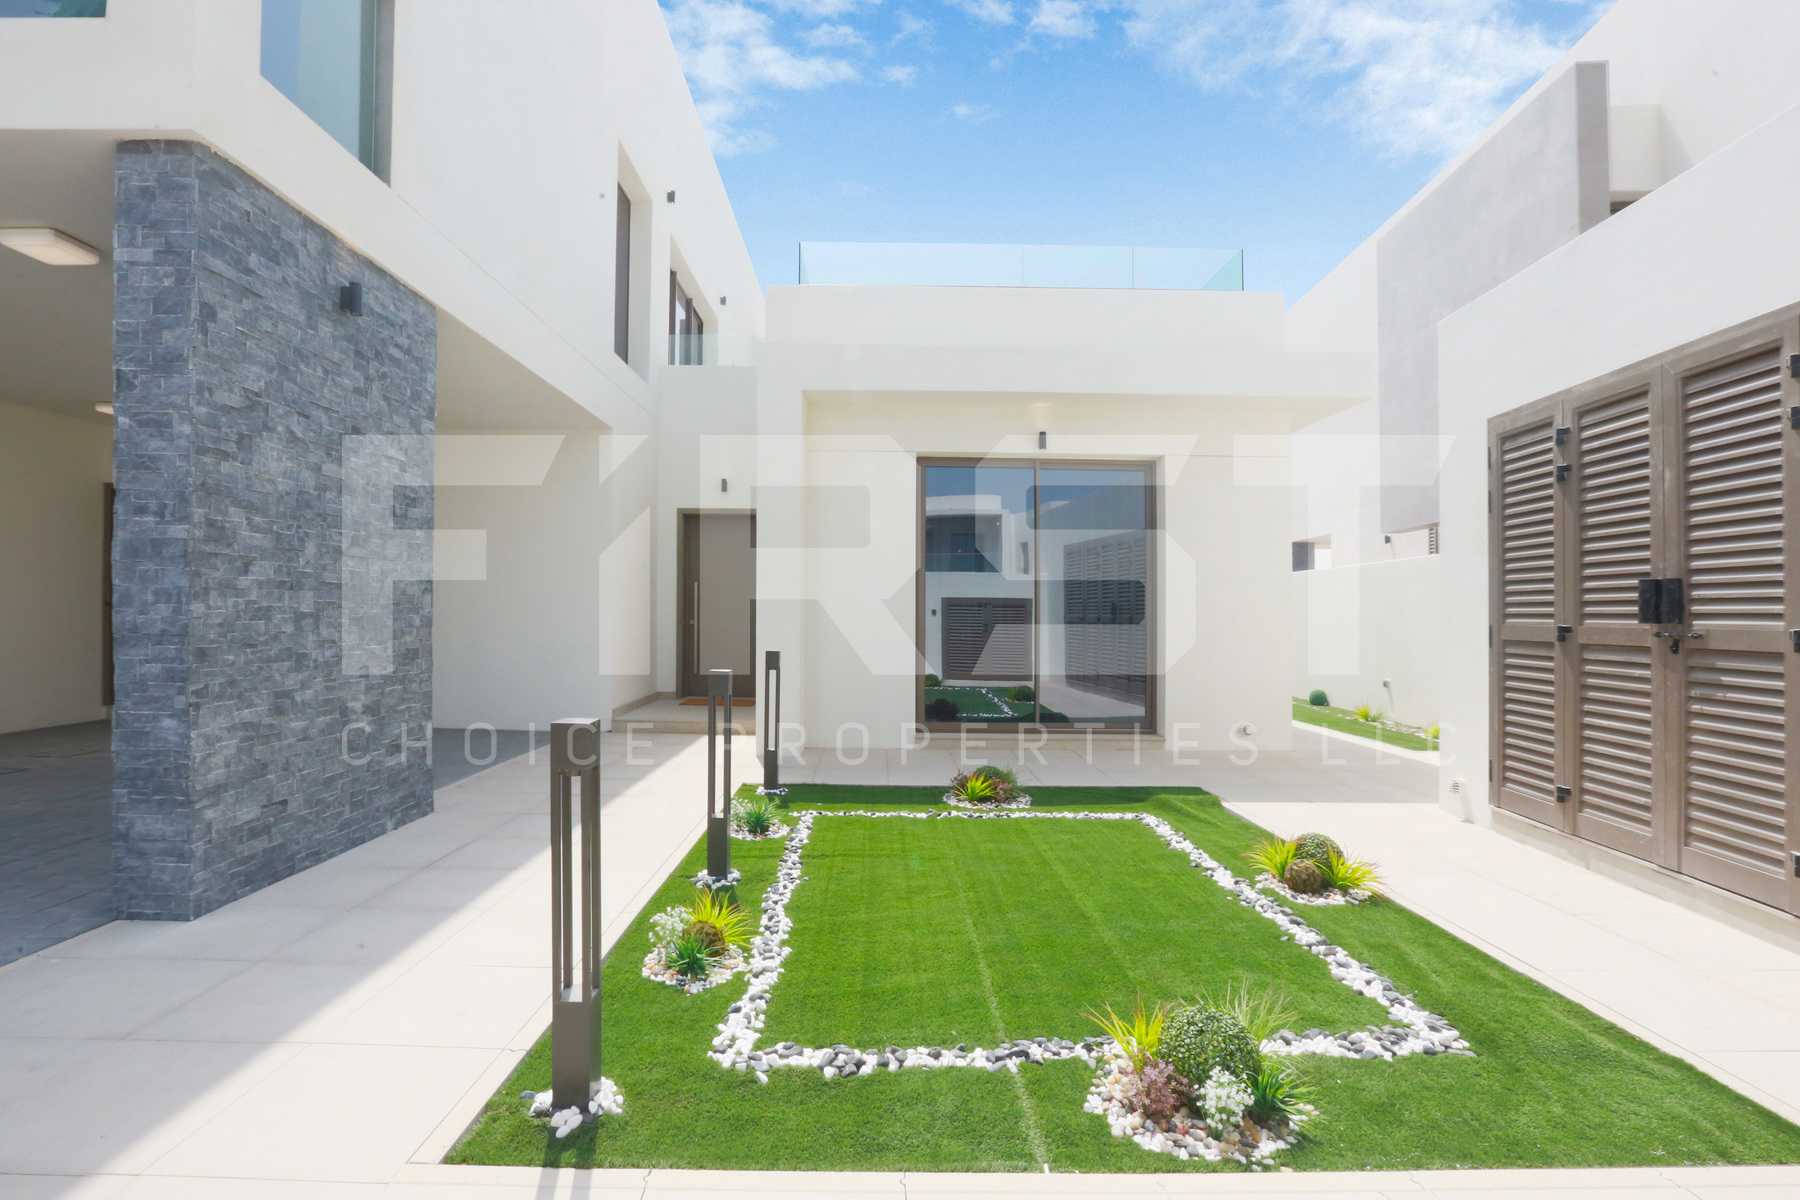 External Photo of 4 Bedroom Villa Type 4F in Yas Acres Yas Island Abu Dhabi UAE (11).jpg